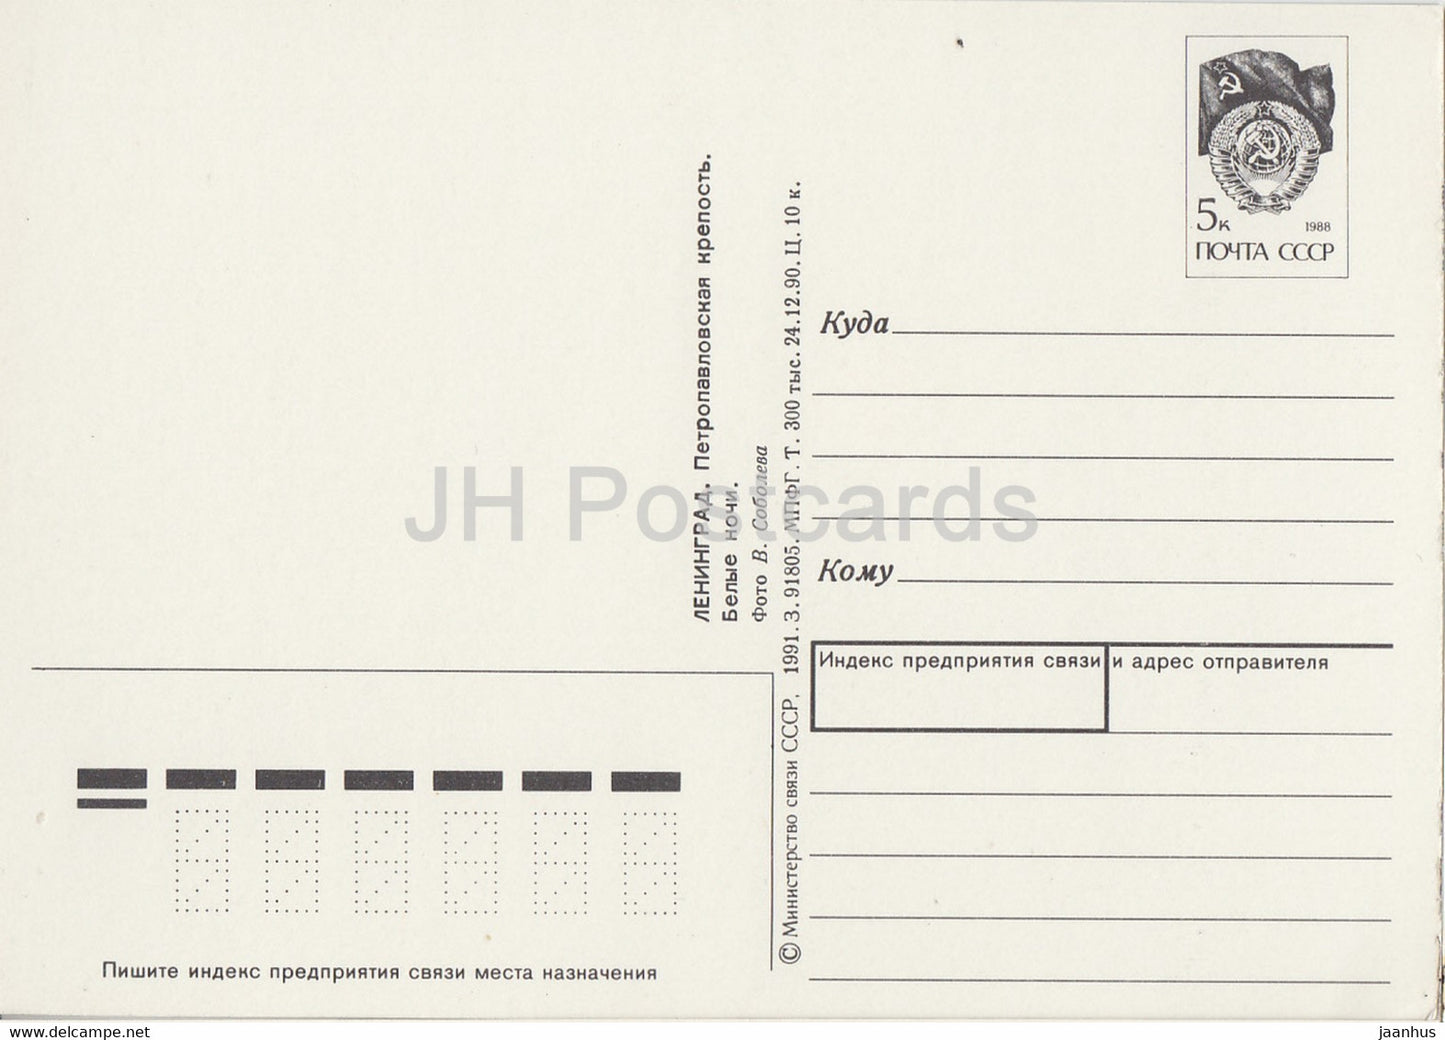 Leningrad - Saint-Pétersbourg - Forteresse Pierre et Paul - Nuits blanches - entier postal - 1 - 1991 - Russie URSS - inutilisé